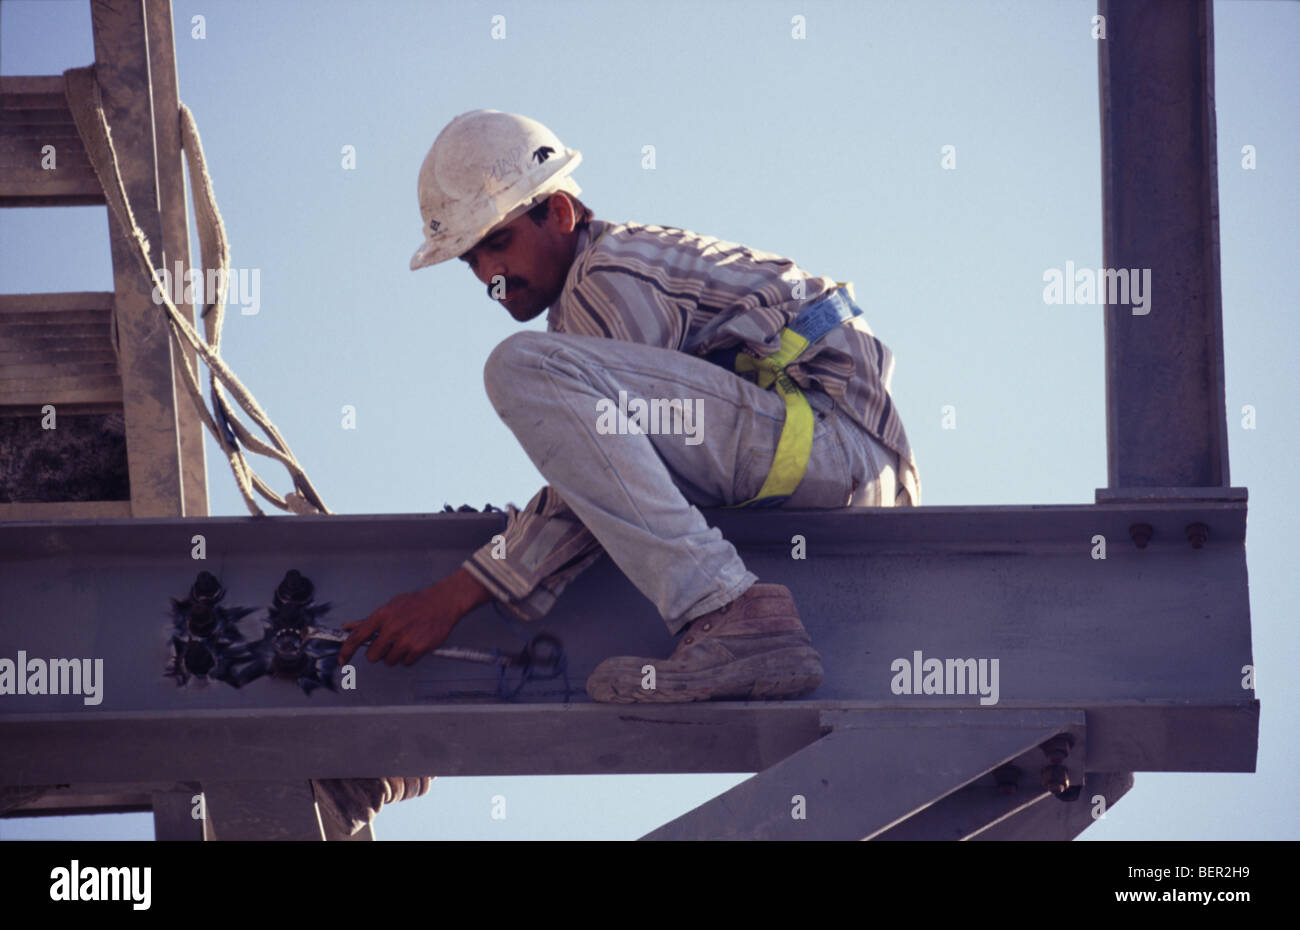 Workman sur superstructure pétrochimique Oman Banque D'Images